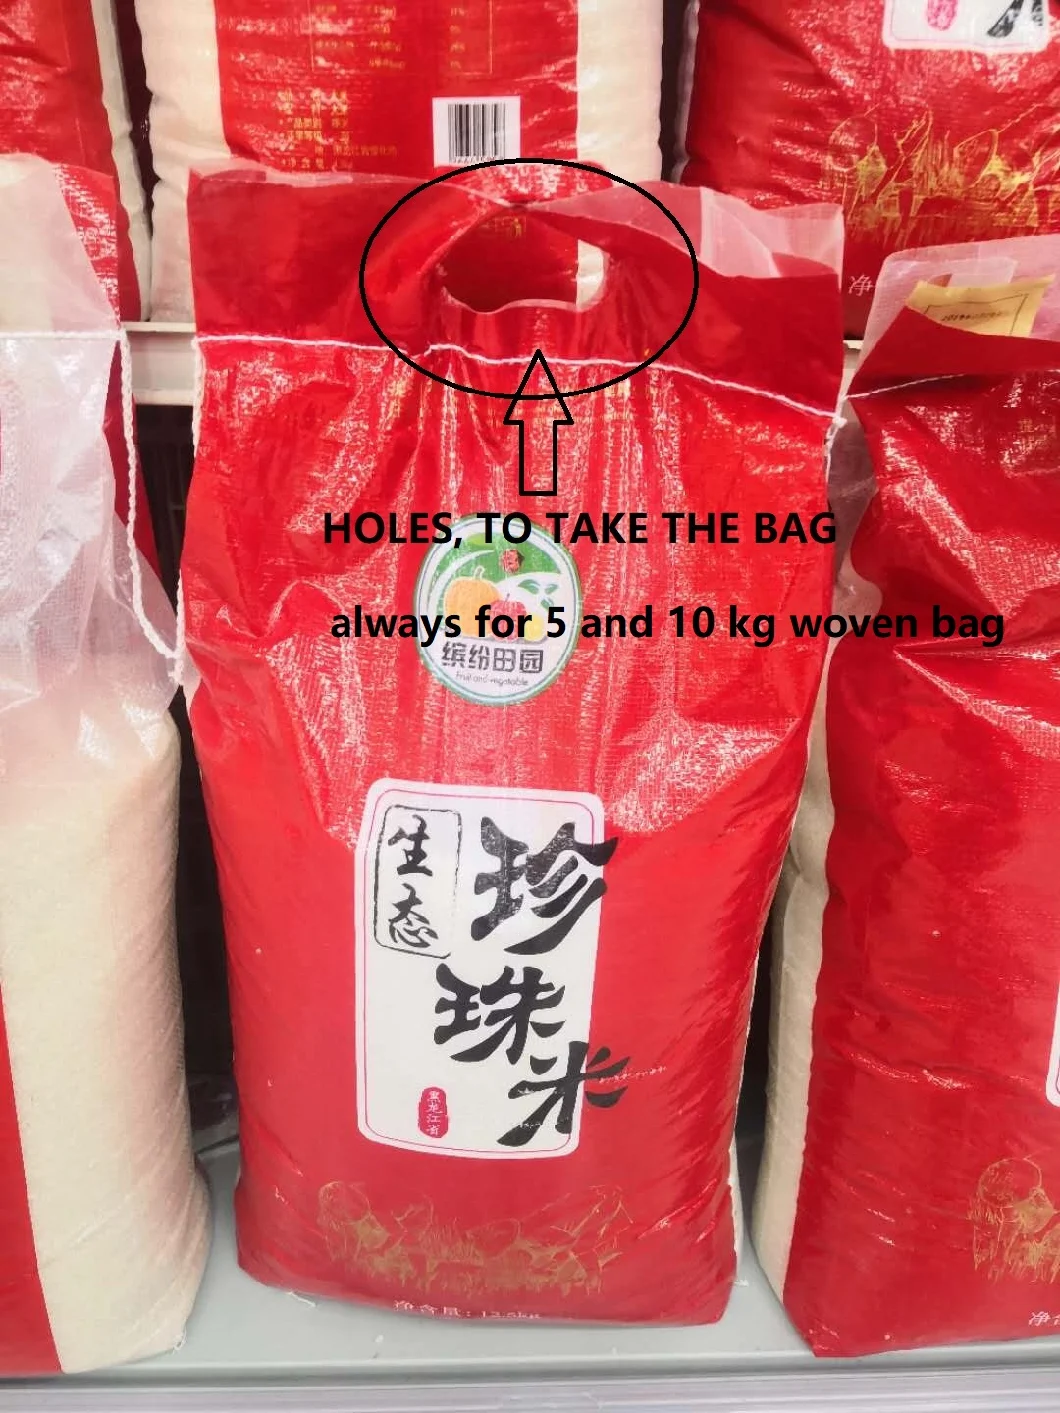 PP Woven Bag, Rice, Beans, Plastic Bag, Sack, Stronger Bags Sacks